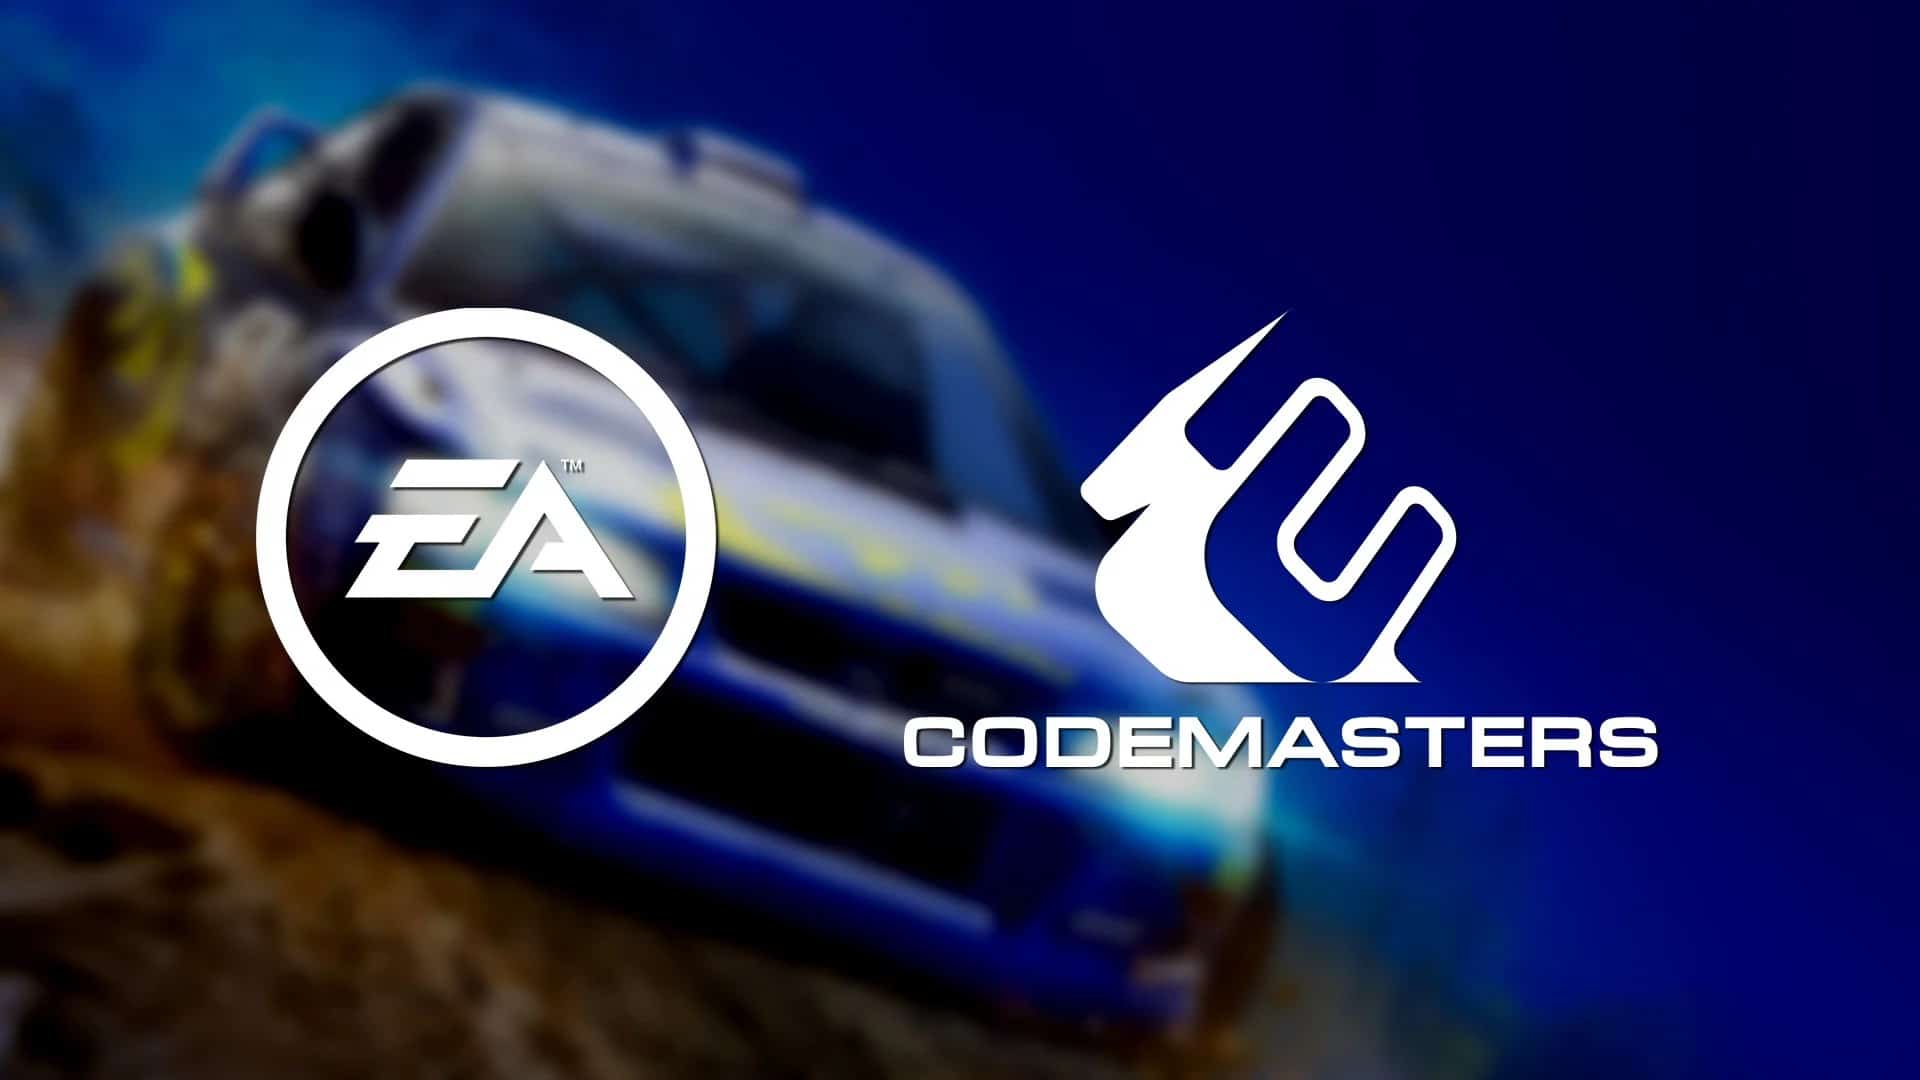 Logo marcas das empresas EA e Codemasters com um carro ao fundo